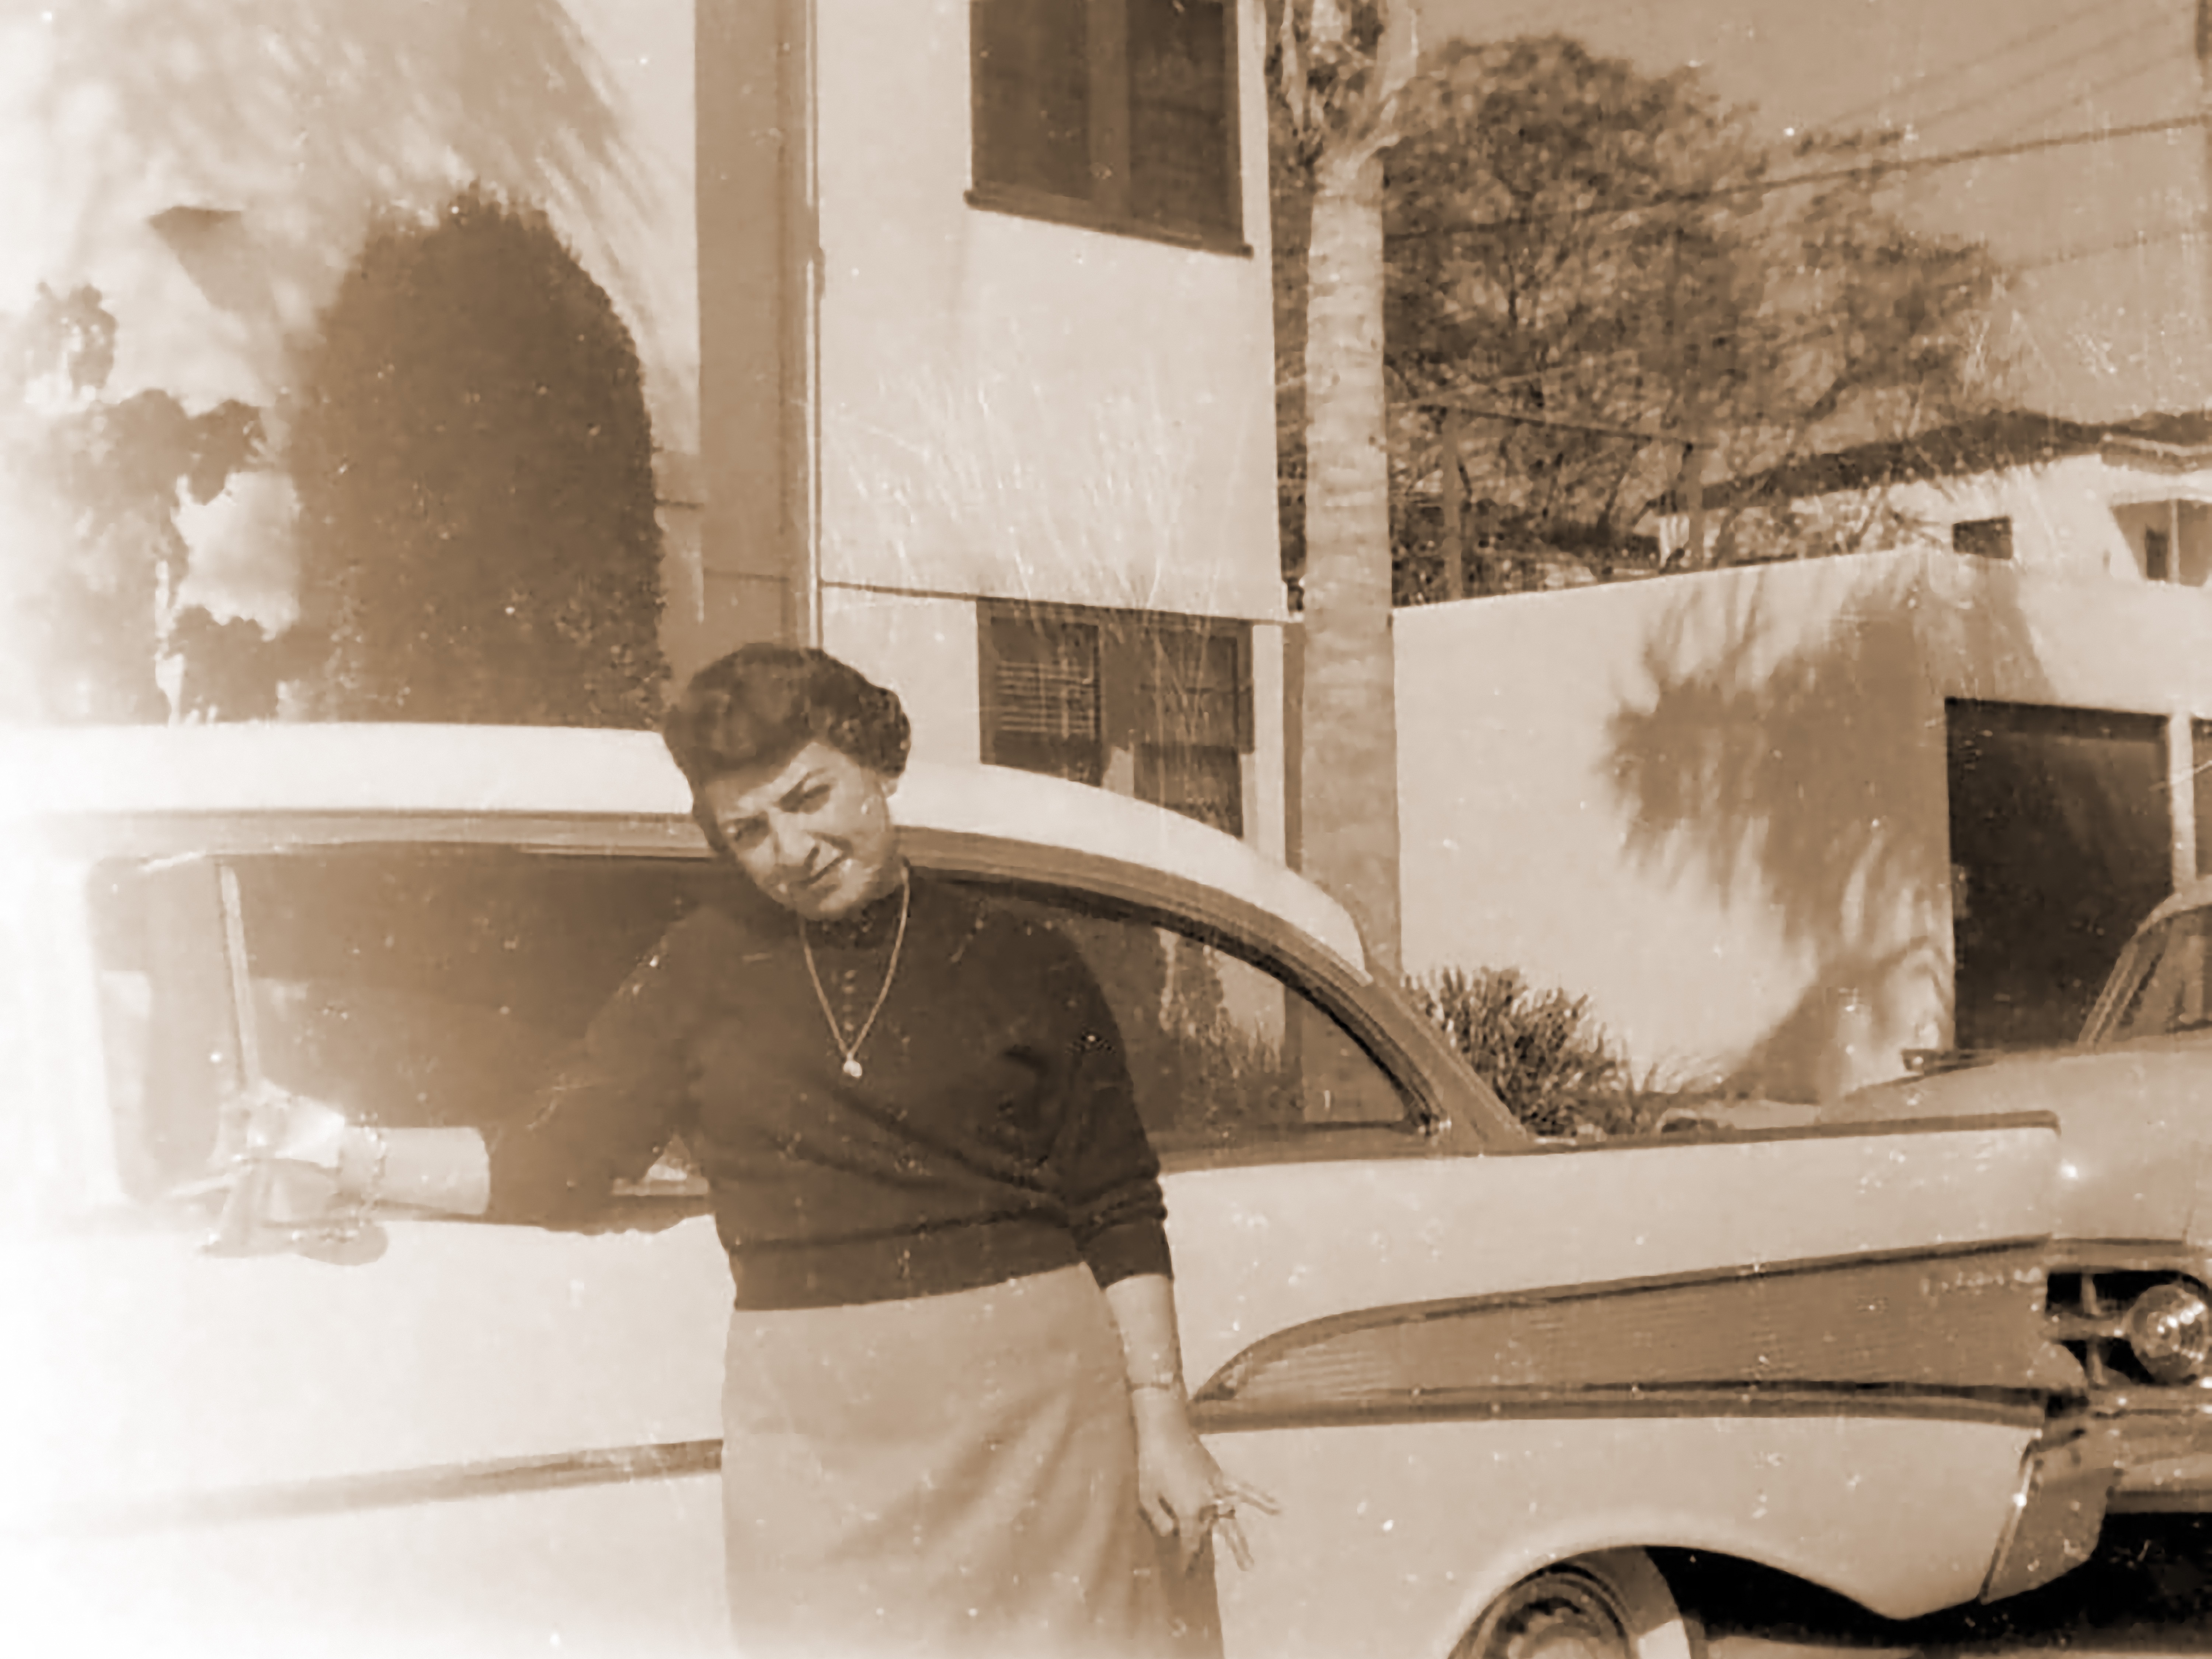 Sara in 1957